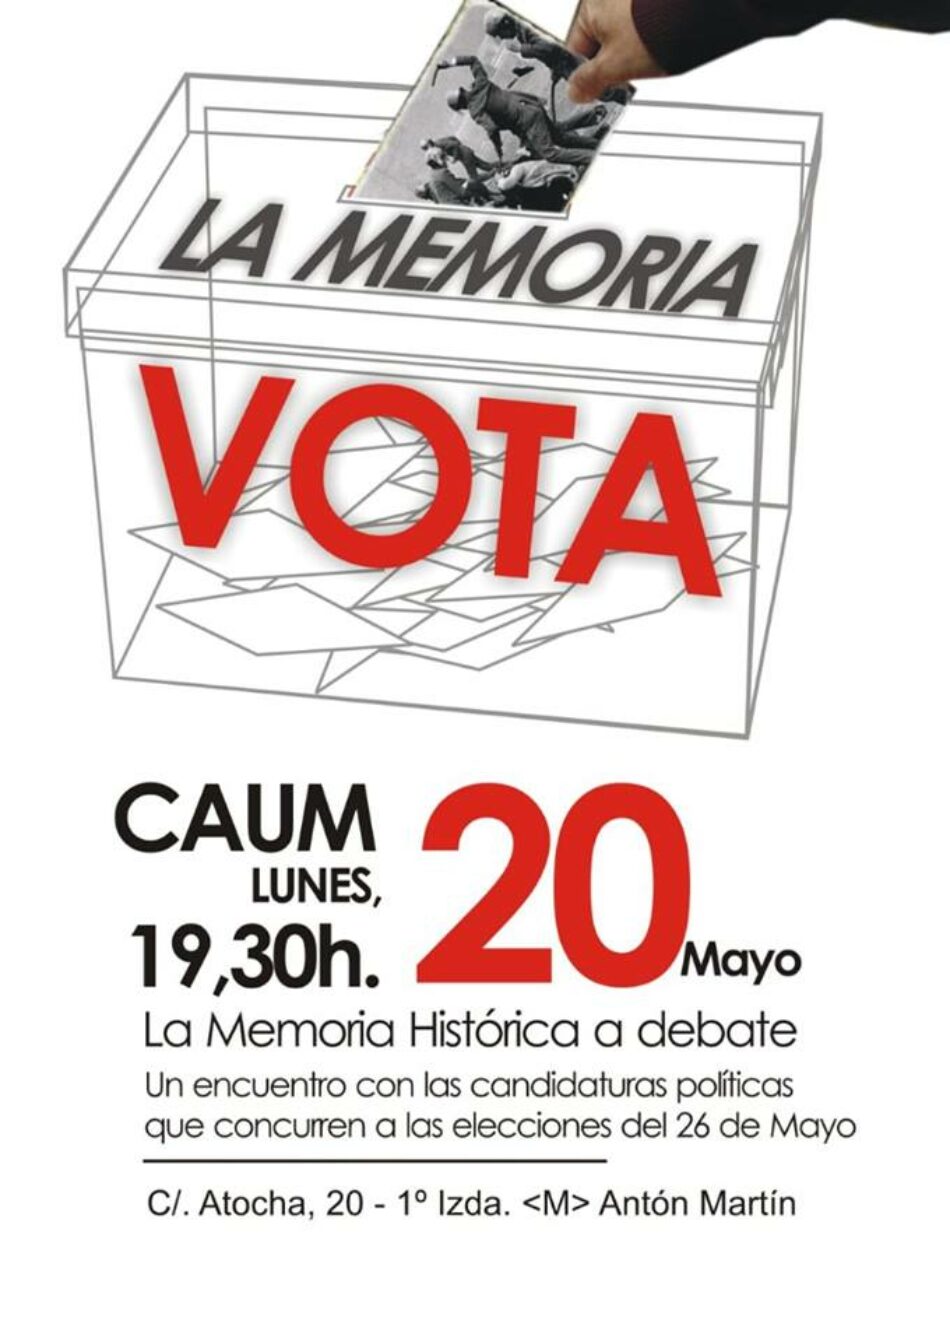 «La Memoria Histórica a debate» en el Caum: candidatos/as presentan sus propuestas programáticas de cara a las elecciones del 26M